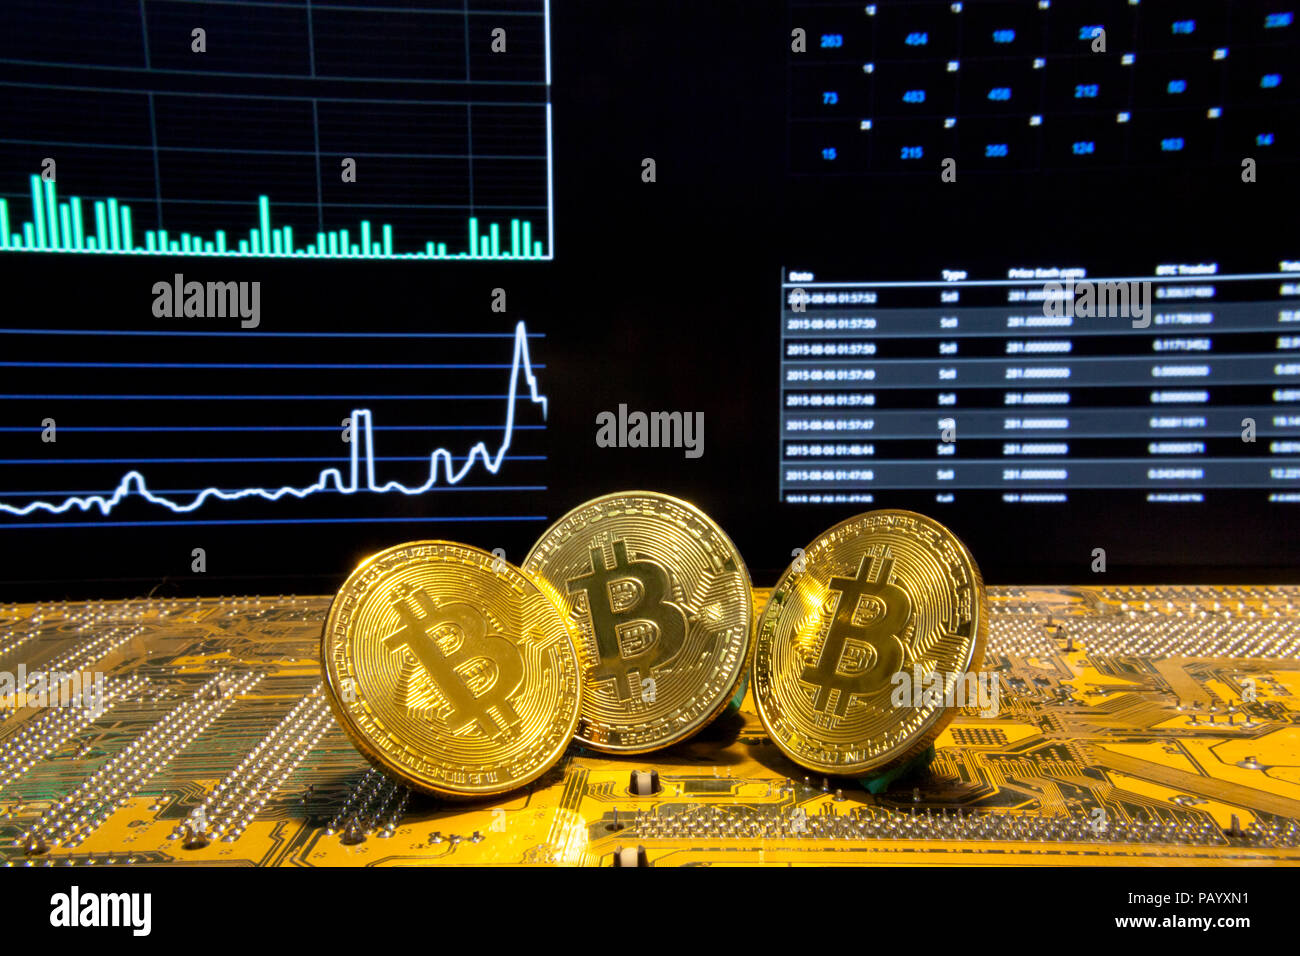 Drei goldene Bitcoins auf einer Leiterplatte. Hintergrund: Statistiken, Diagramme und Anzeigen, die über virtuelle digitale crypto-Währungen; geschossen. Stockfoto